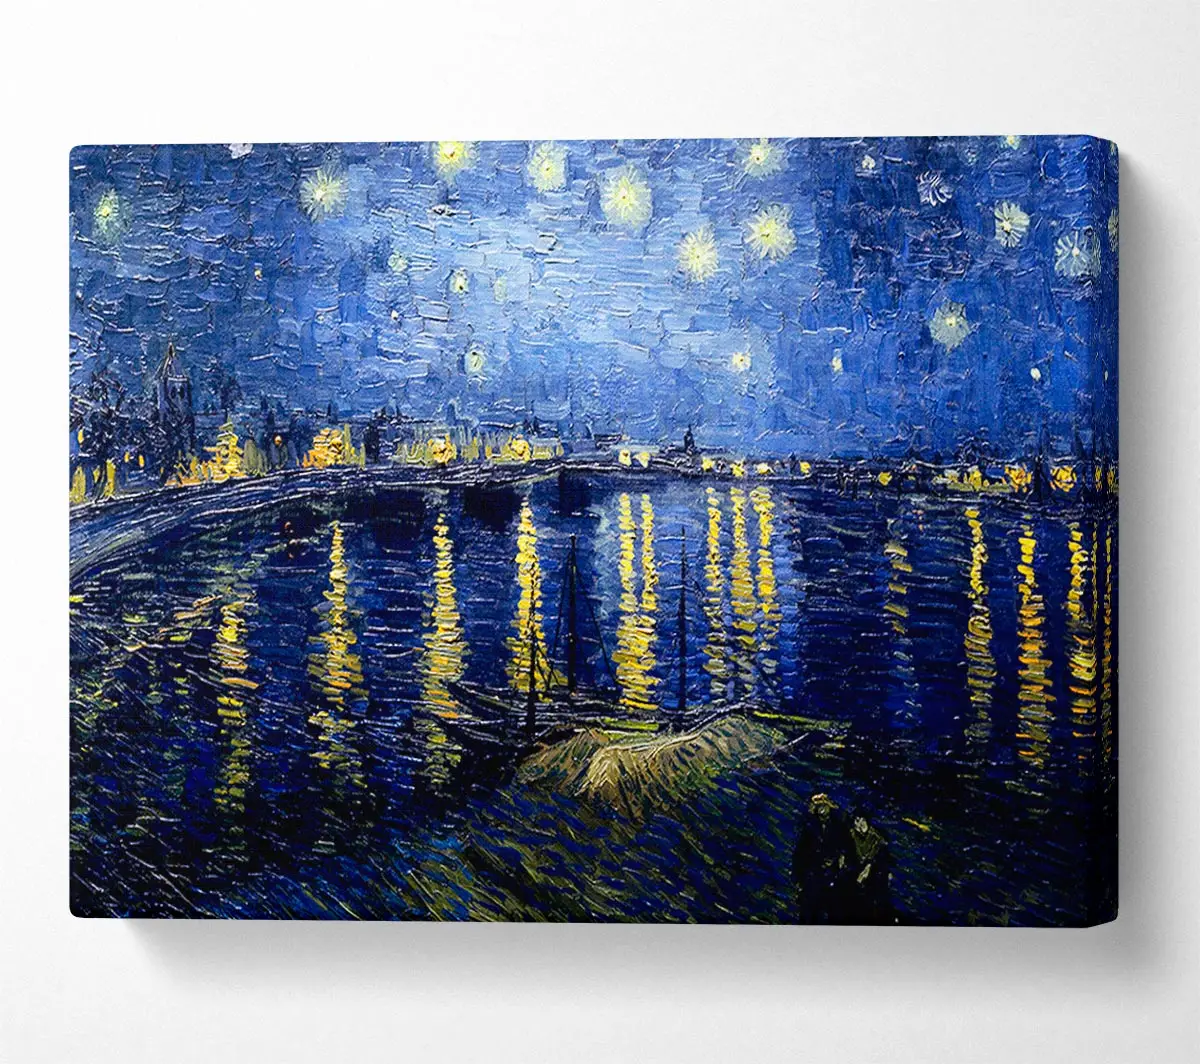 Van Gogh Starry Night 眉ber die rhonblaue